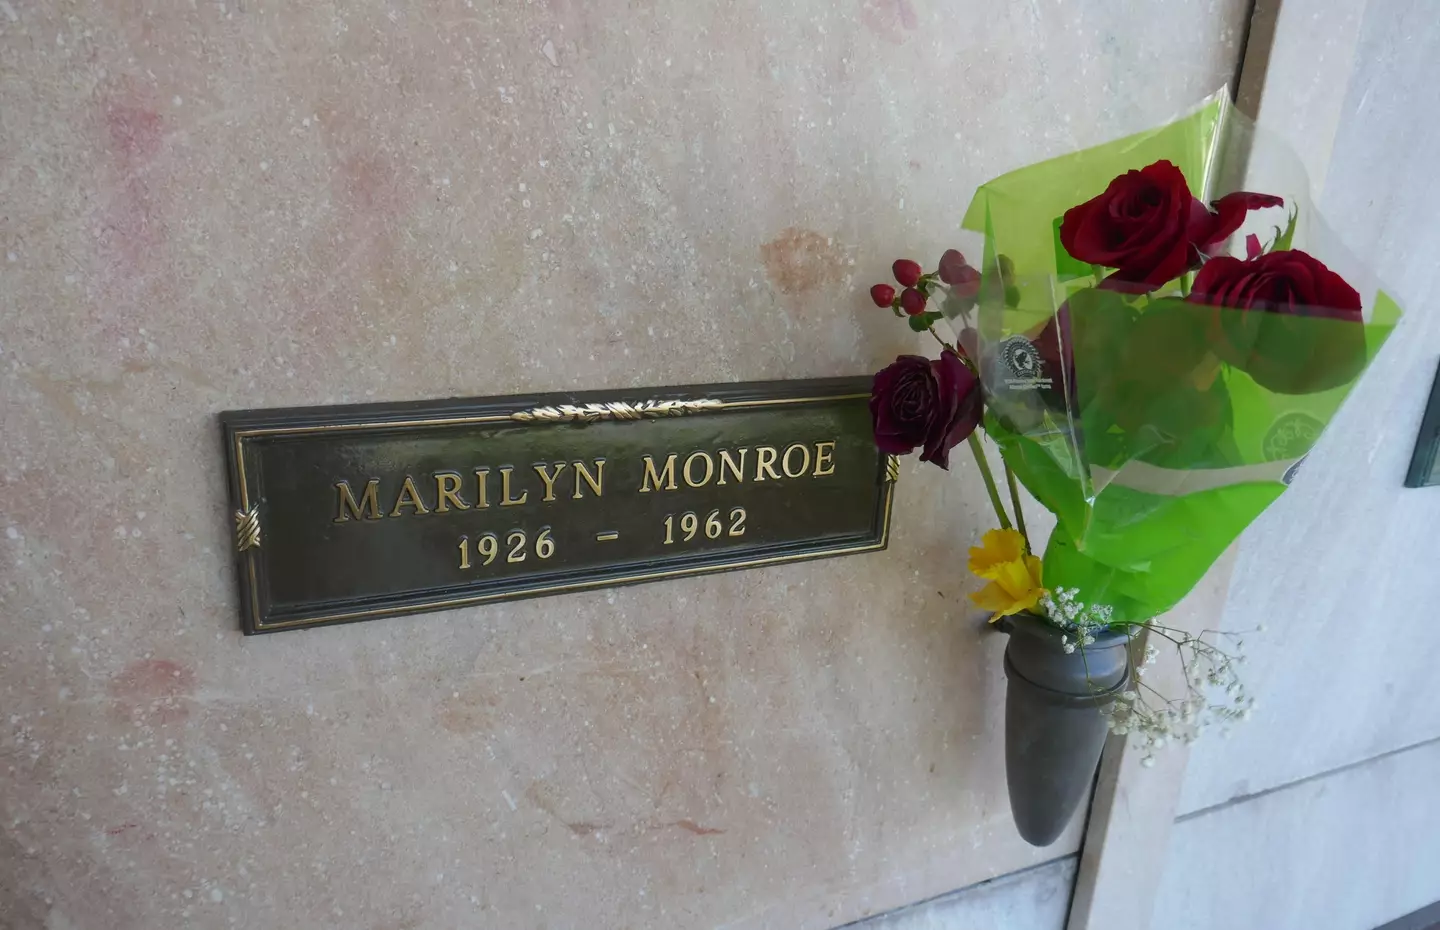 Marilyn Monroe's grave Pierce Brothers Westwood Village Memorial Park.